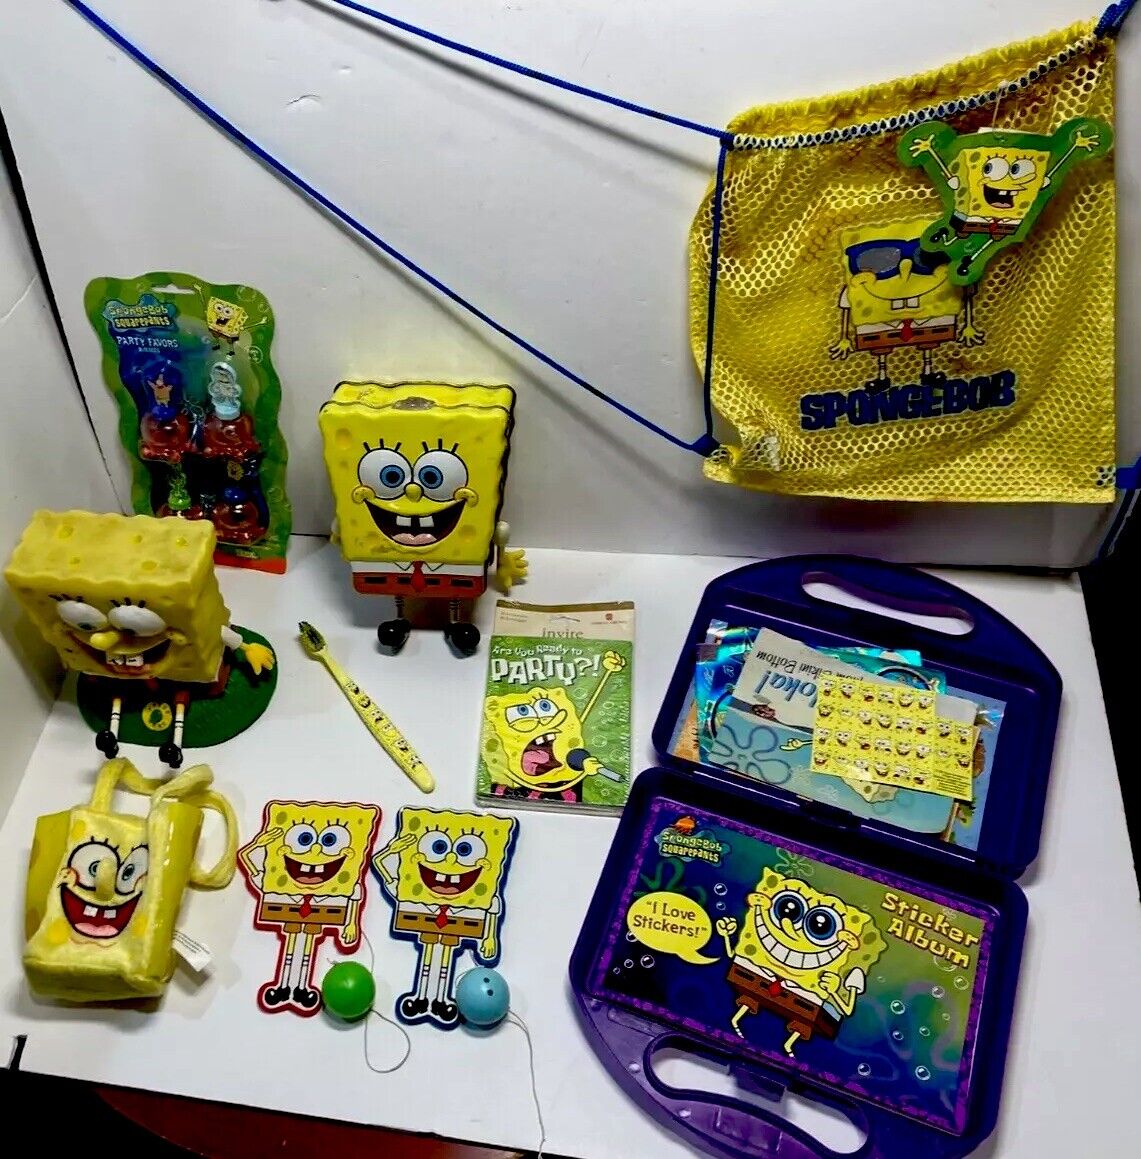 SpongeBob Squarepants Vintage lot of 10 items Display Viacom Nickelodeon